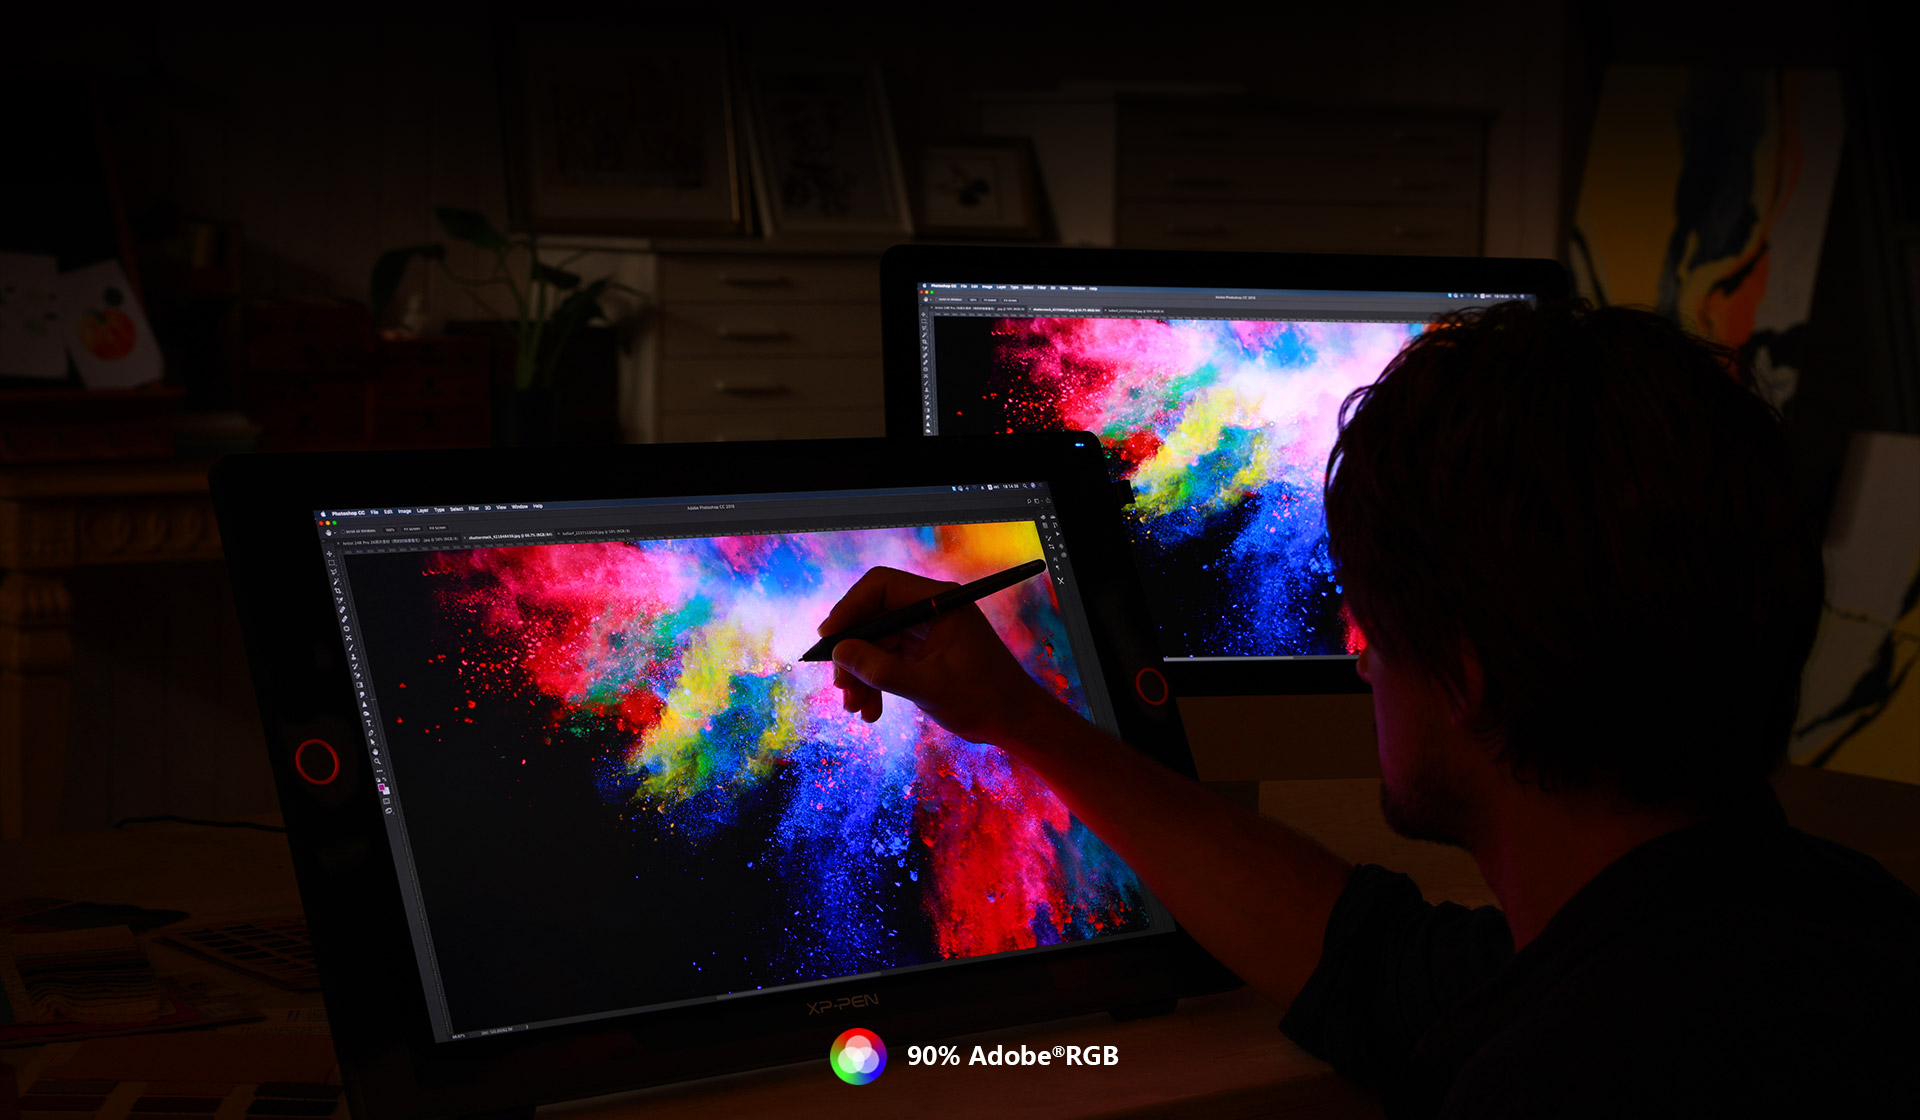  Alimente su creatividad Con pantalla gráfica grande XP-Pen Artist 24 Pro